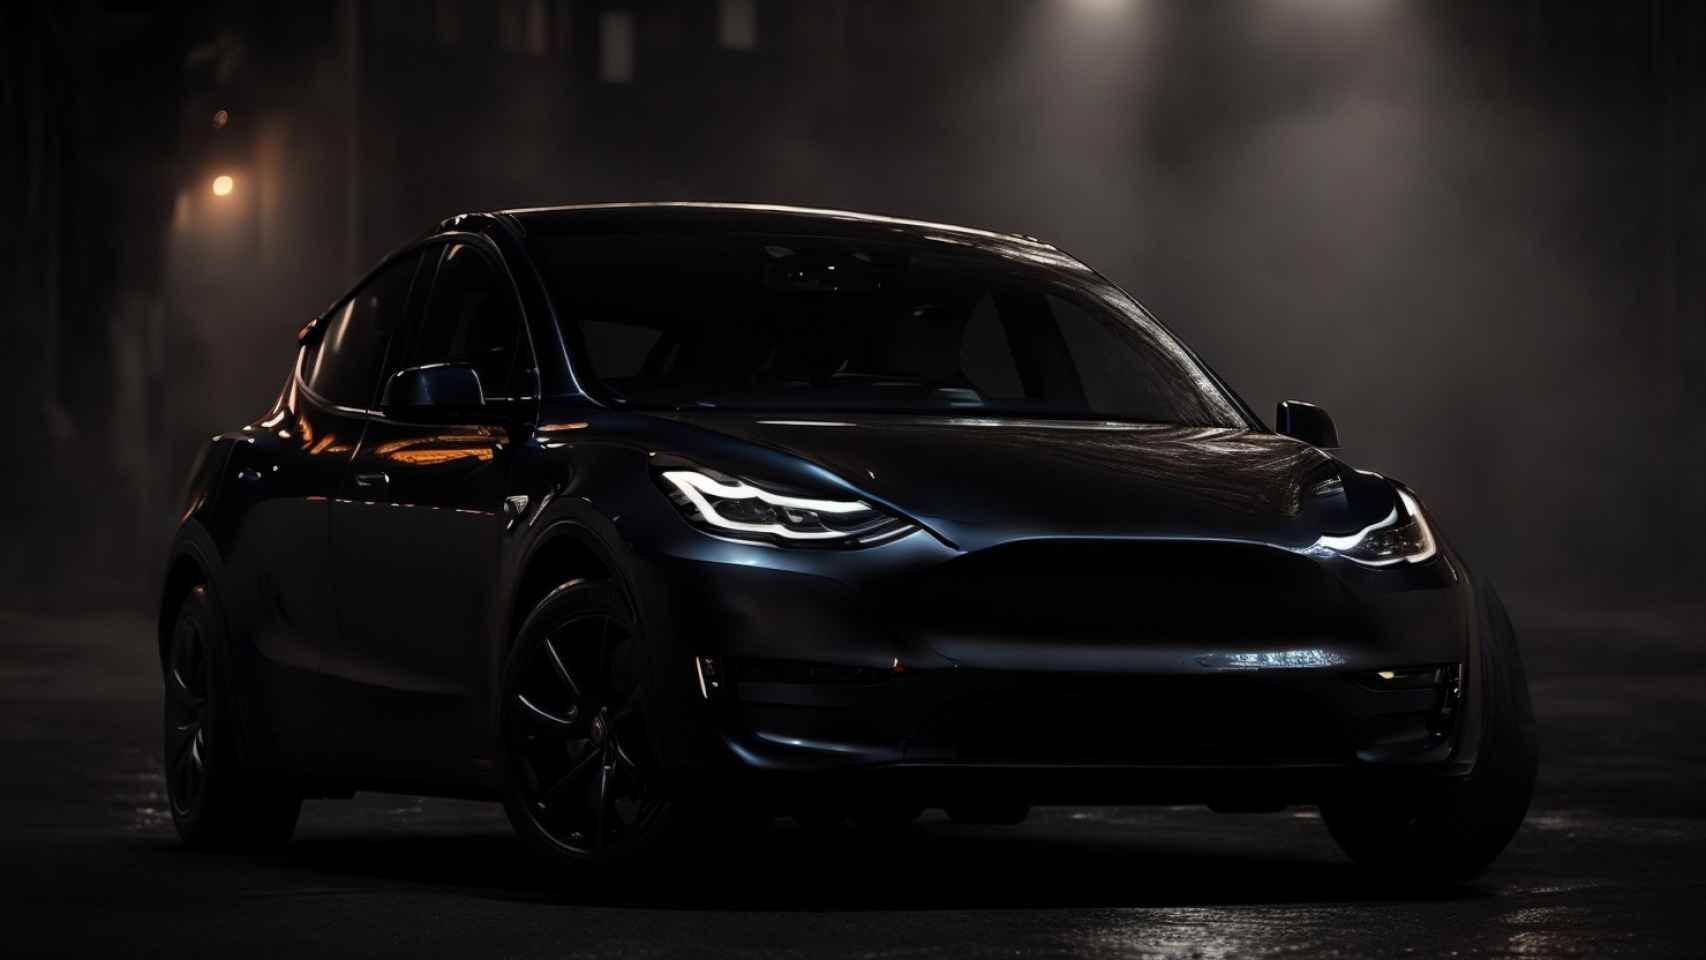 12 motivos para no comprar un Tesla y sí otro coche eléctrico o no